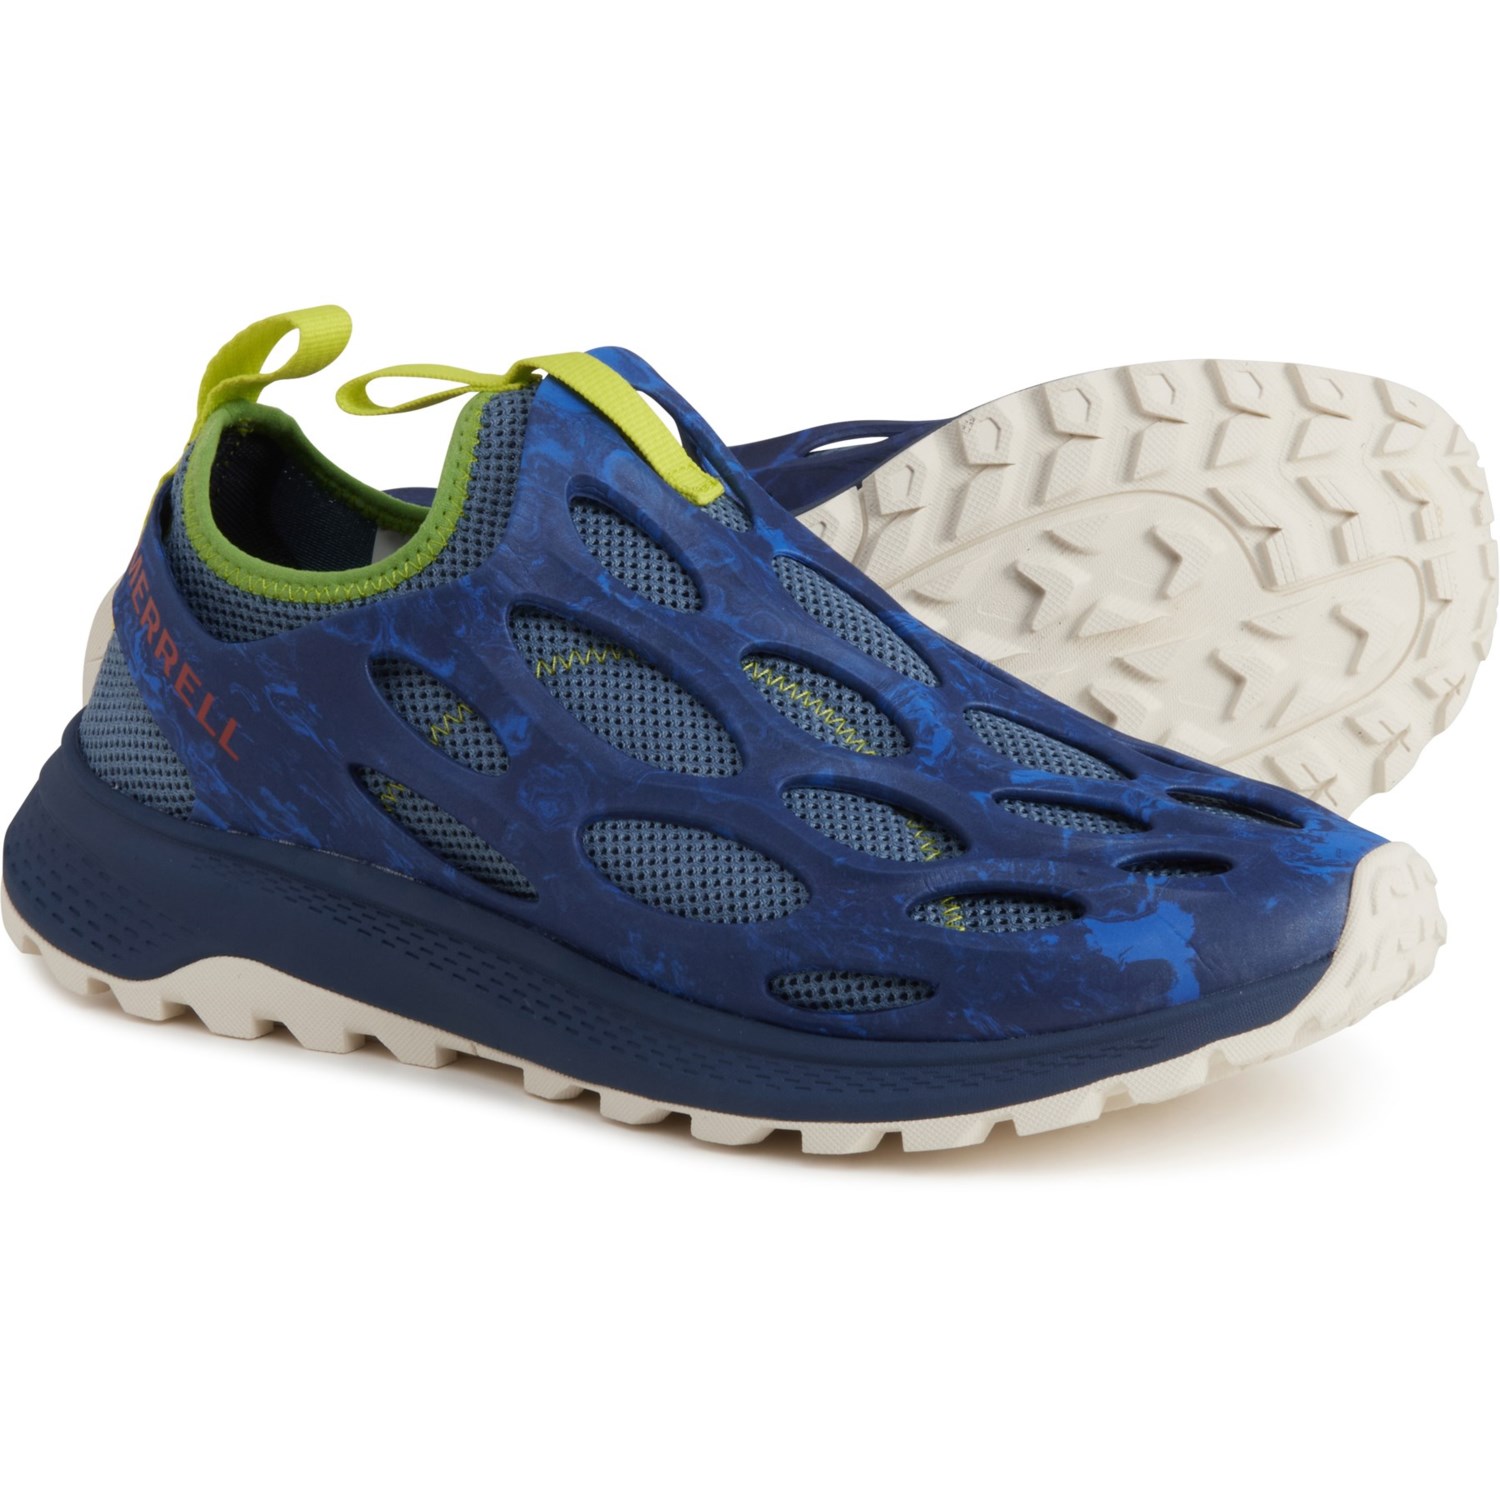 Merrell Hydro Runner Shoes (For Men) - Save 55%